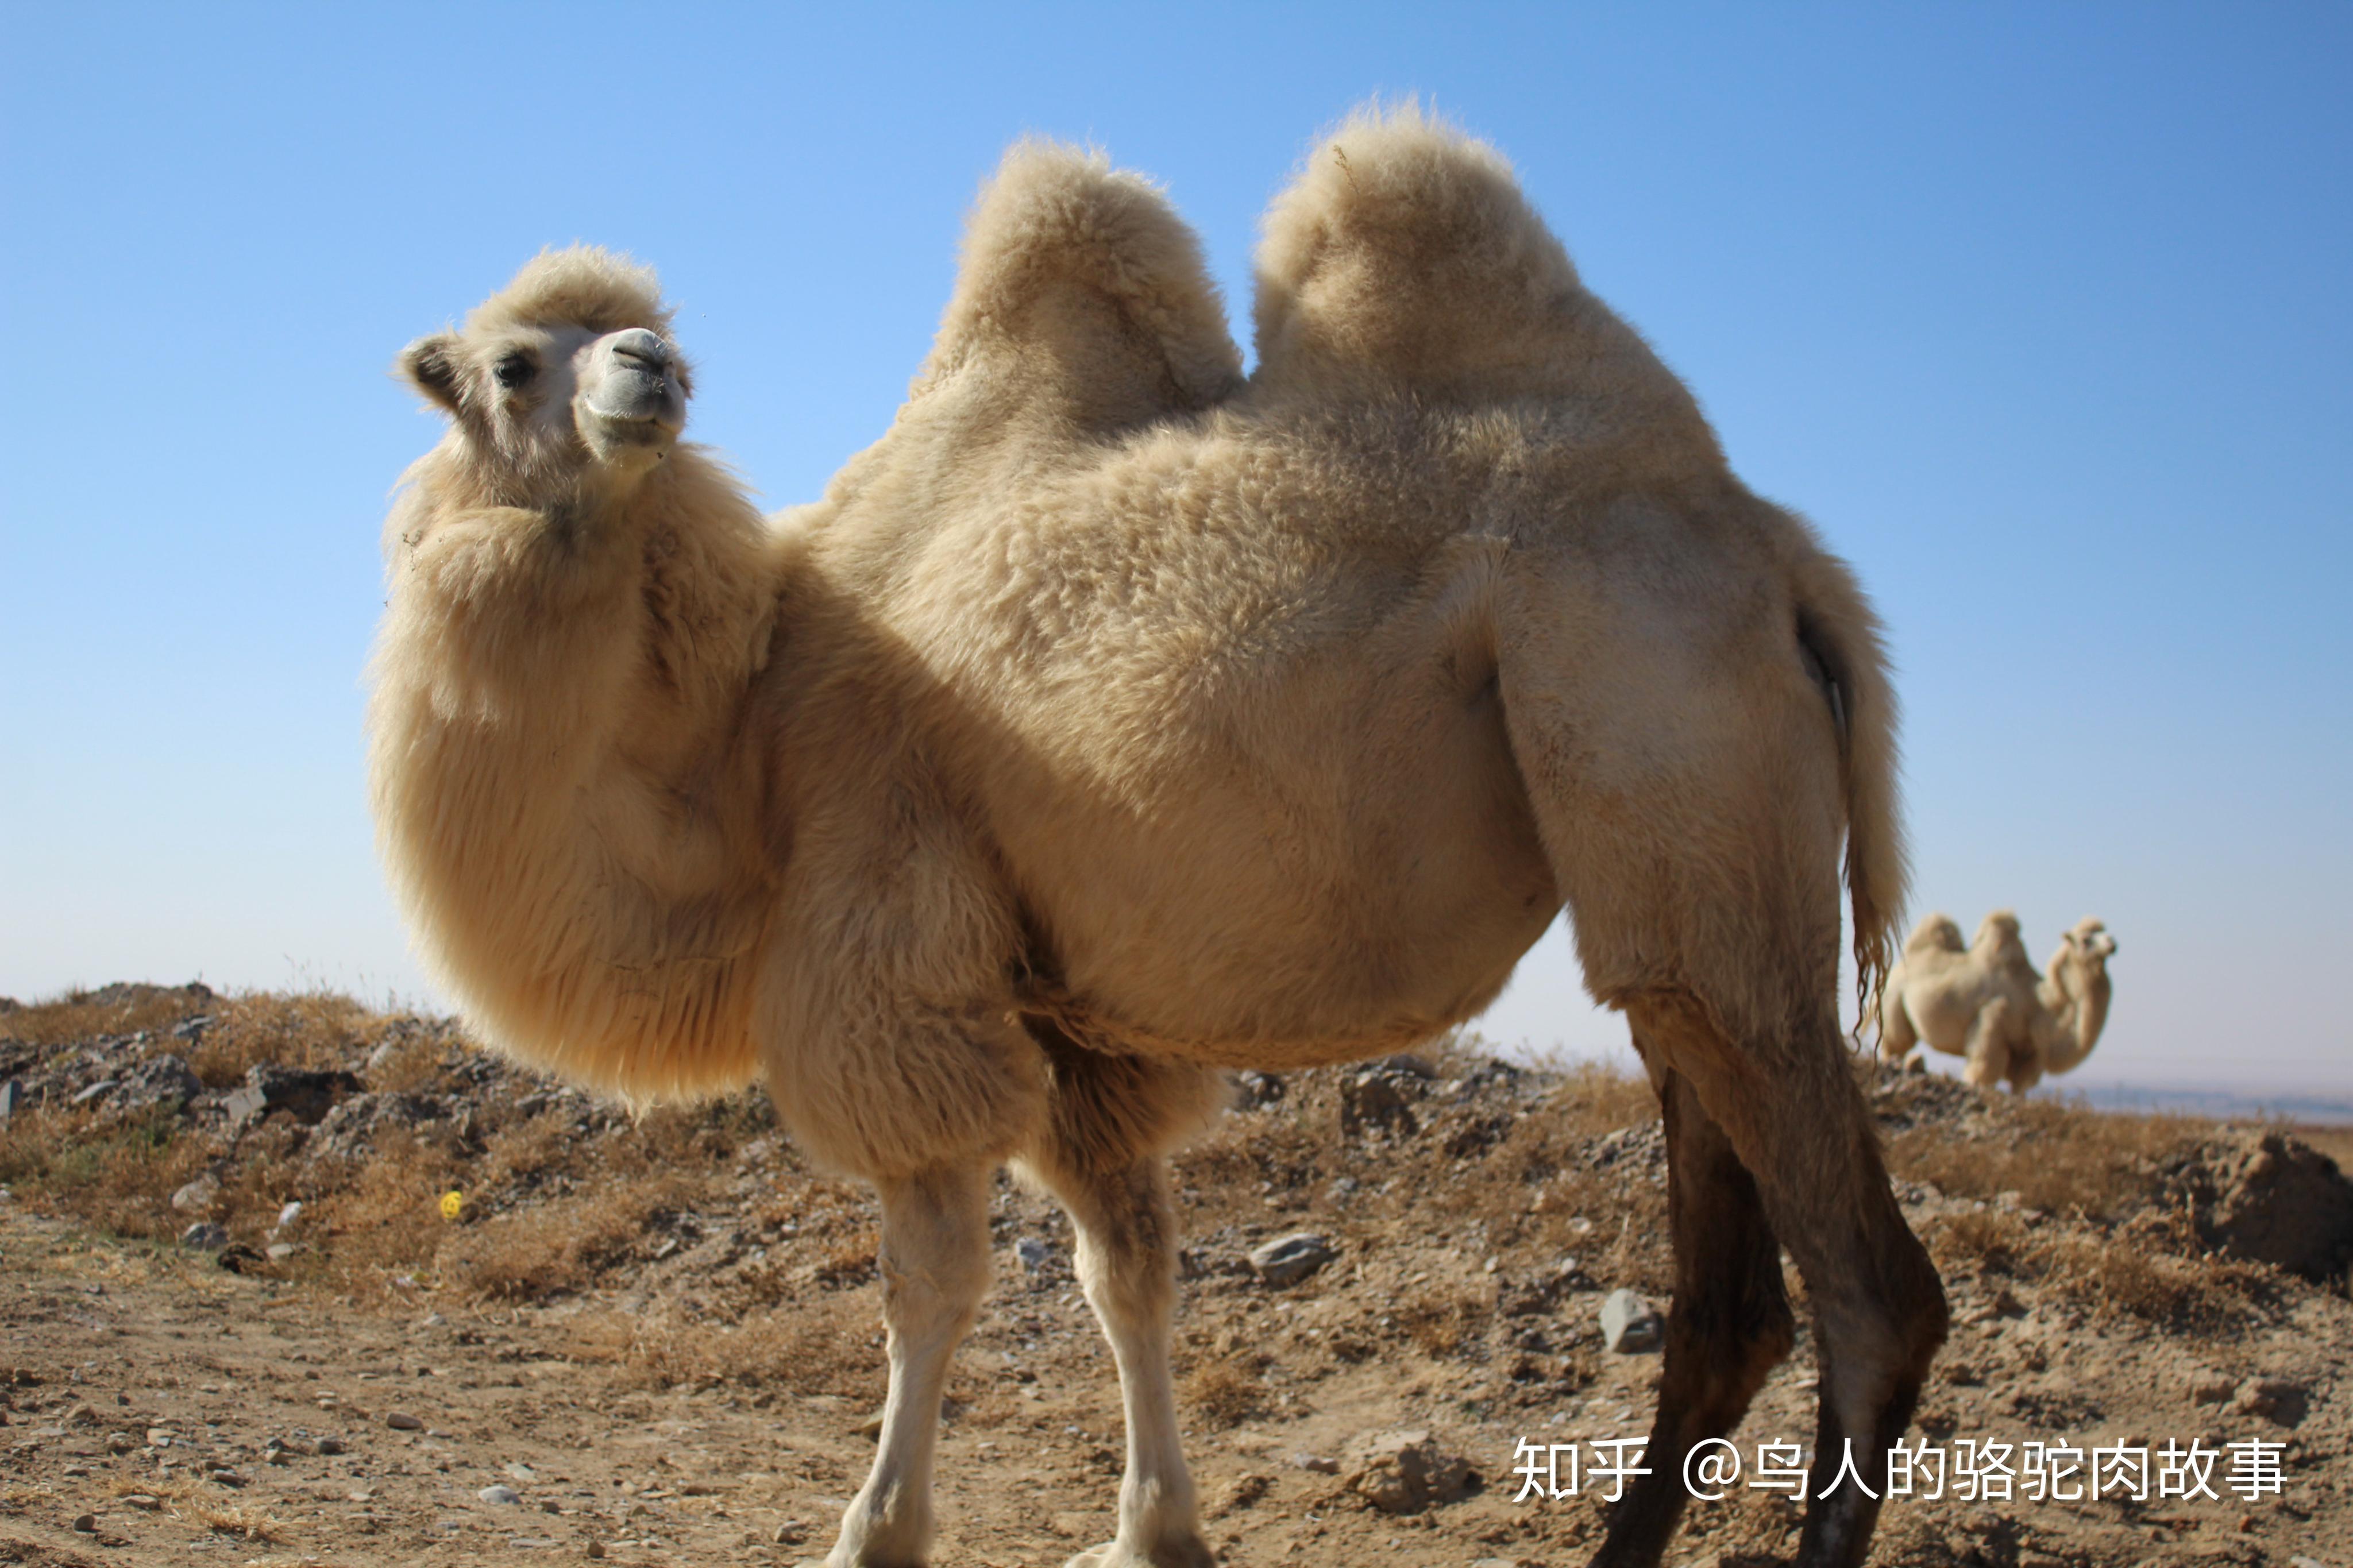 图片素材 : 骆驼喜欢哺乳动物, 动物群, 野生动物, 鼻子, 树, 阿拉伯骆驼, 生物, 动物园 6000x2826 - Felix ...